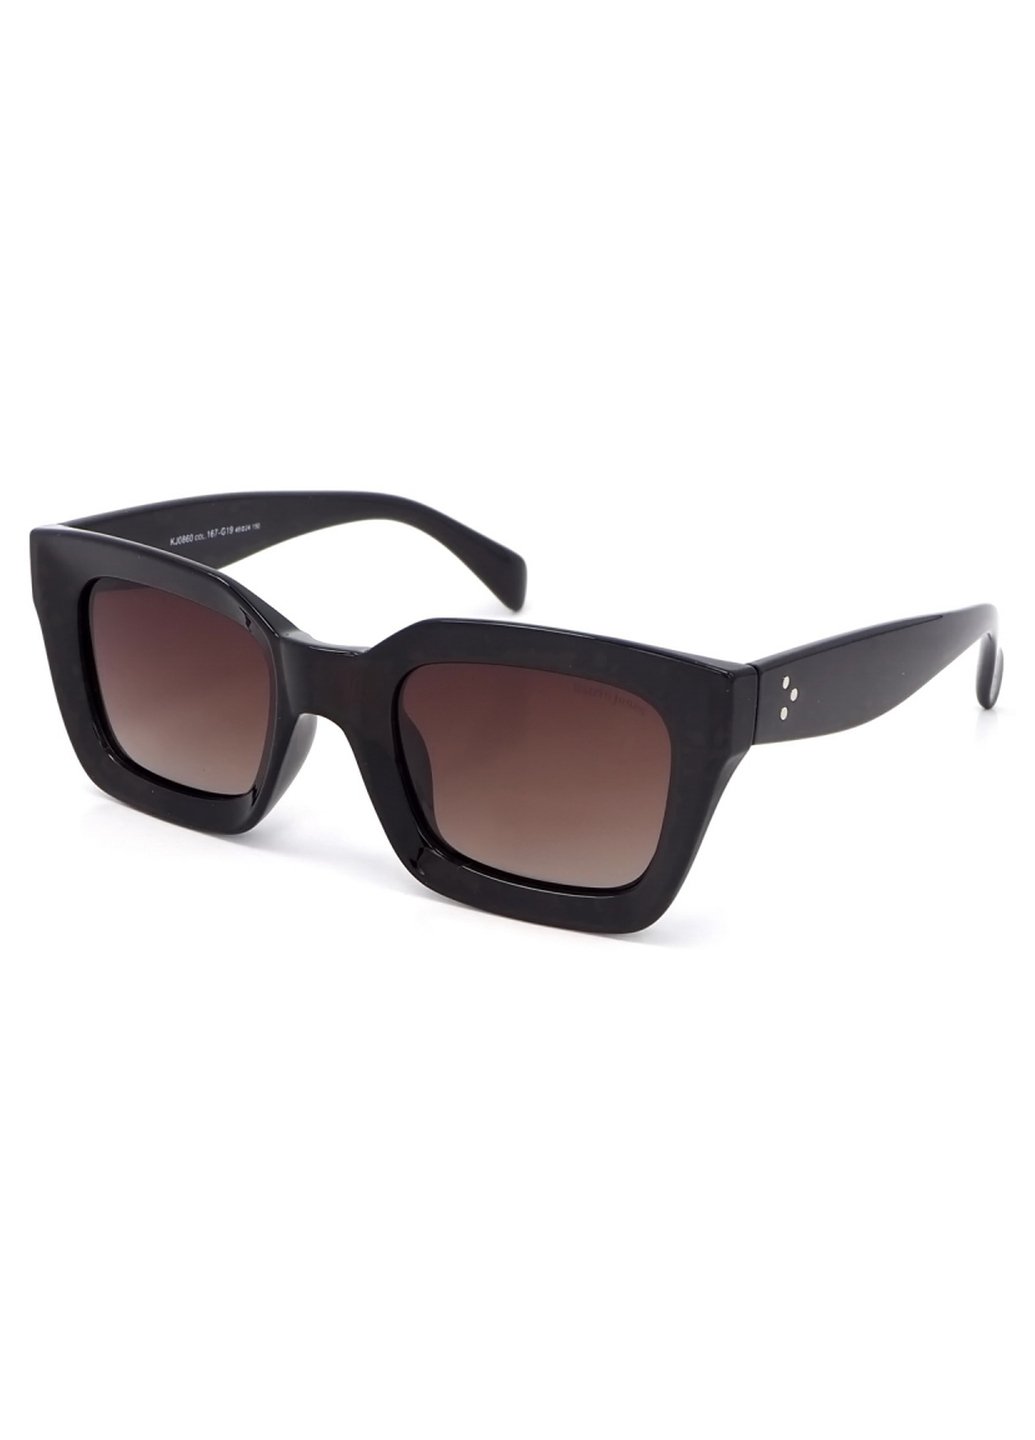 Купить Женские солнцезащитные очки Katrin Jones с поляризацией KJ0860 180044 - Коричневый в интернет-магазине